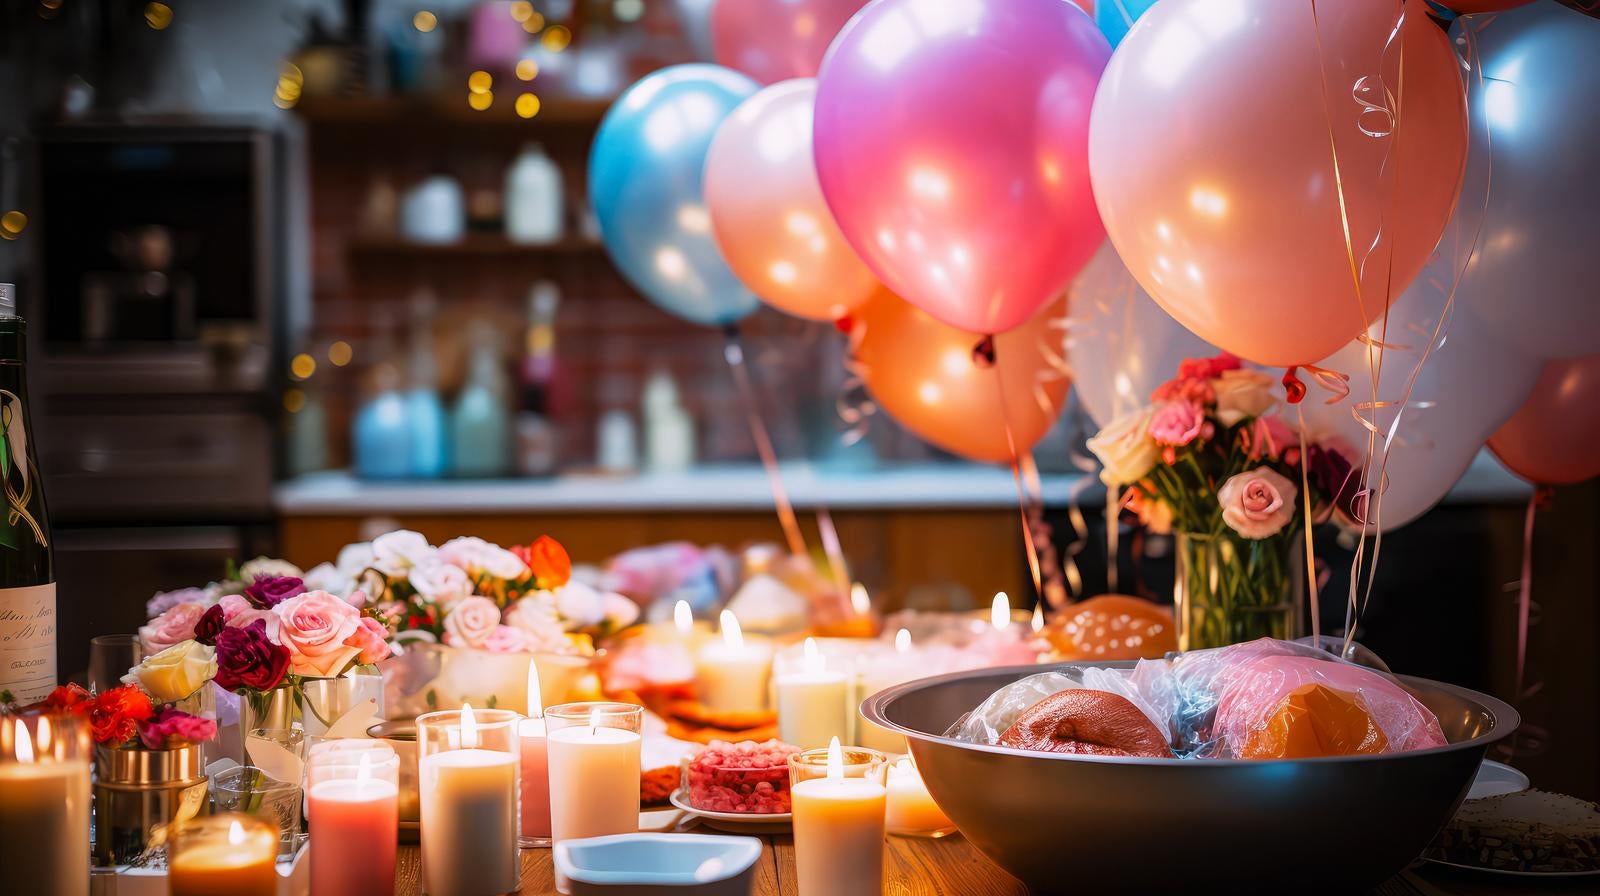 「キャンドルが置かれたテーブルとホームパーティーの様子」の写真